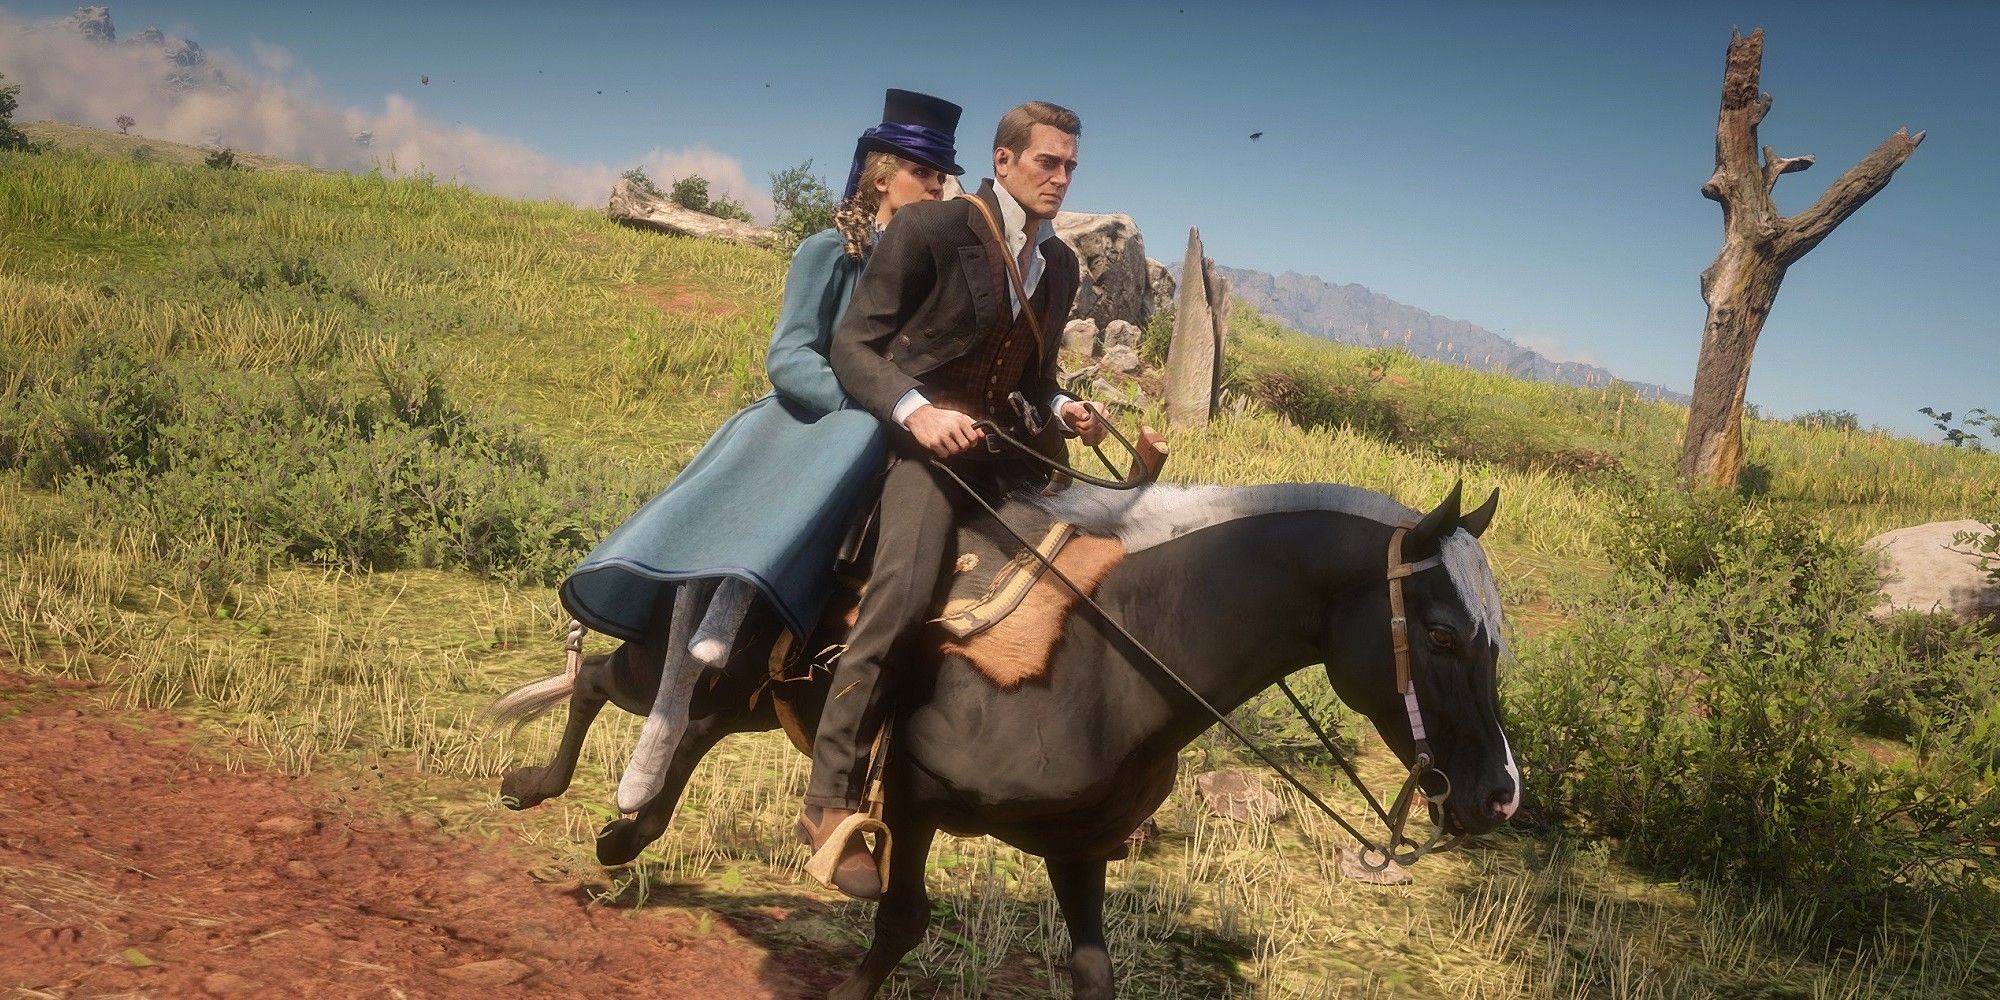 Arthur Giving A Stranger A Ride On His Horse